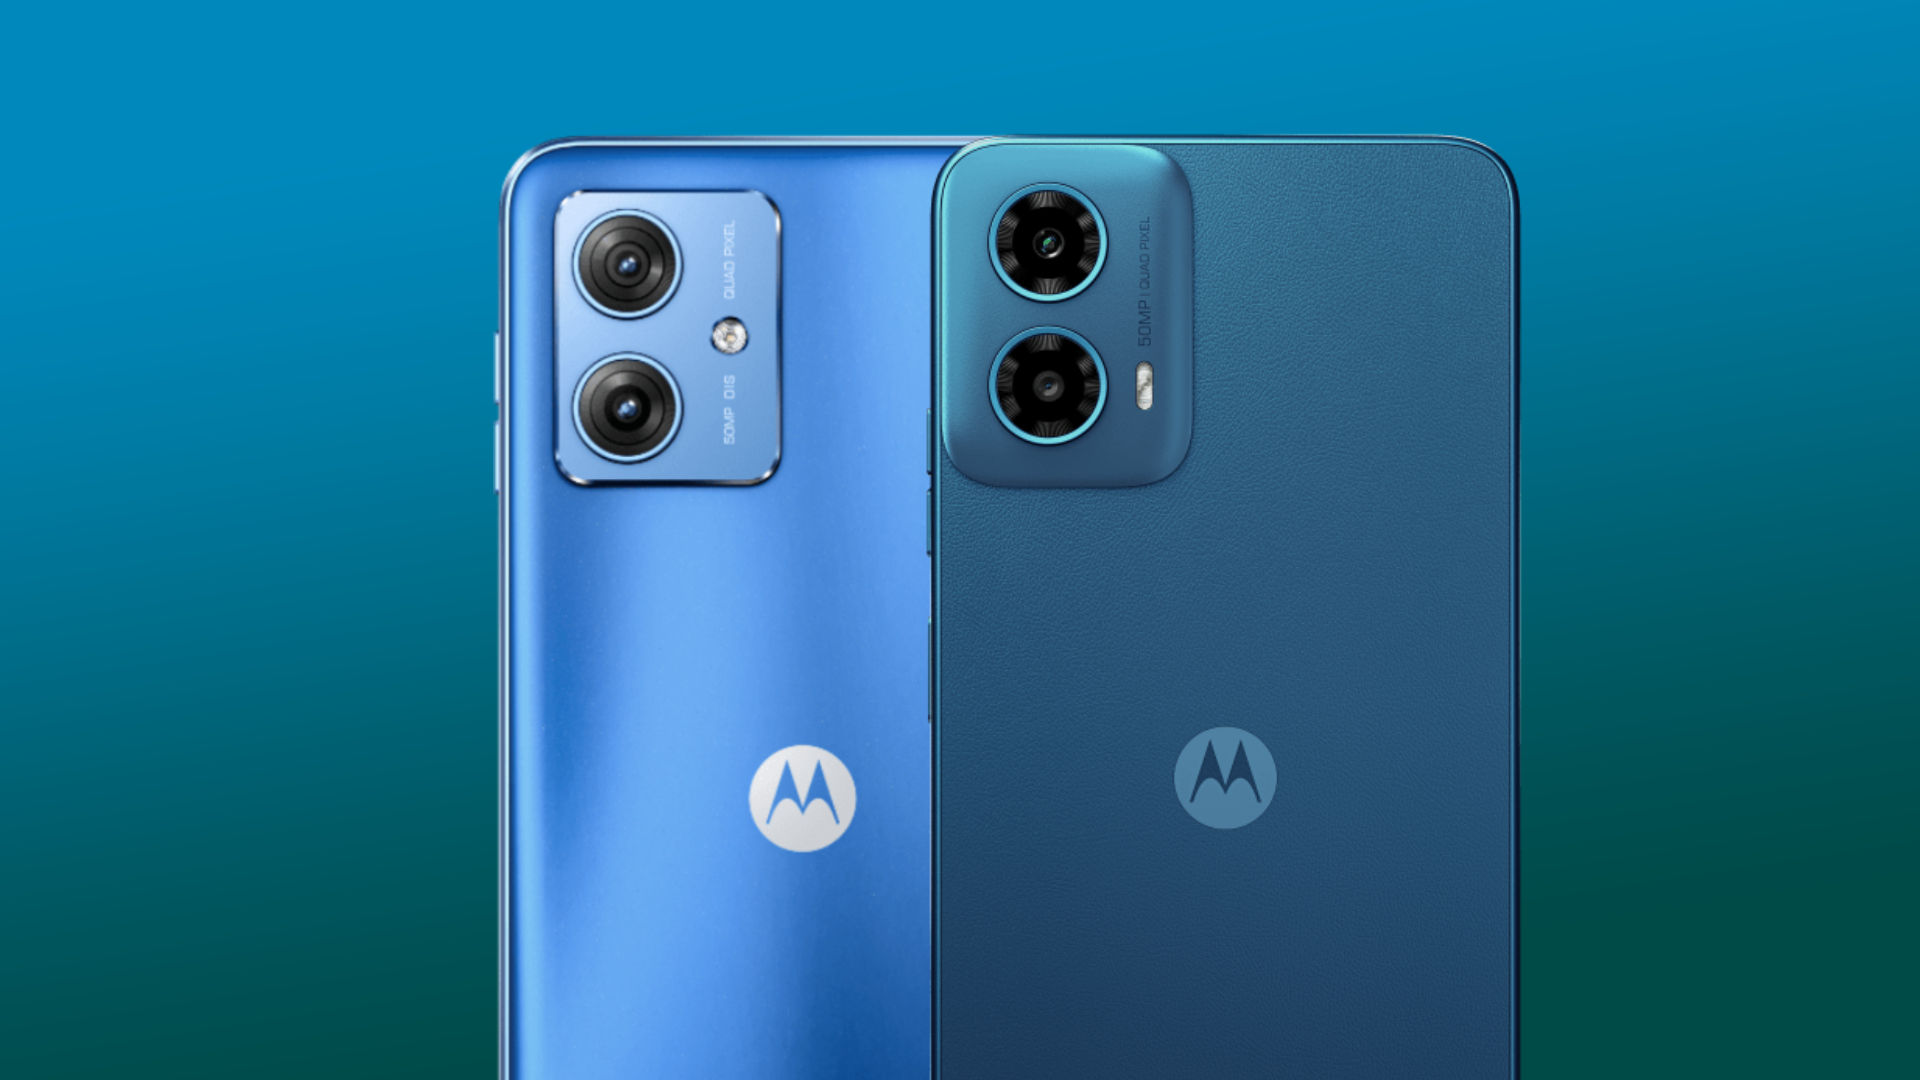 Motorola Moto G54 5G (6000 mAh Battery, 256 GB Storage) Price and